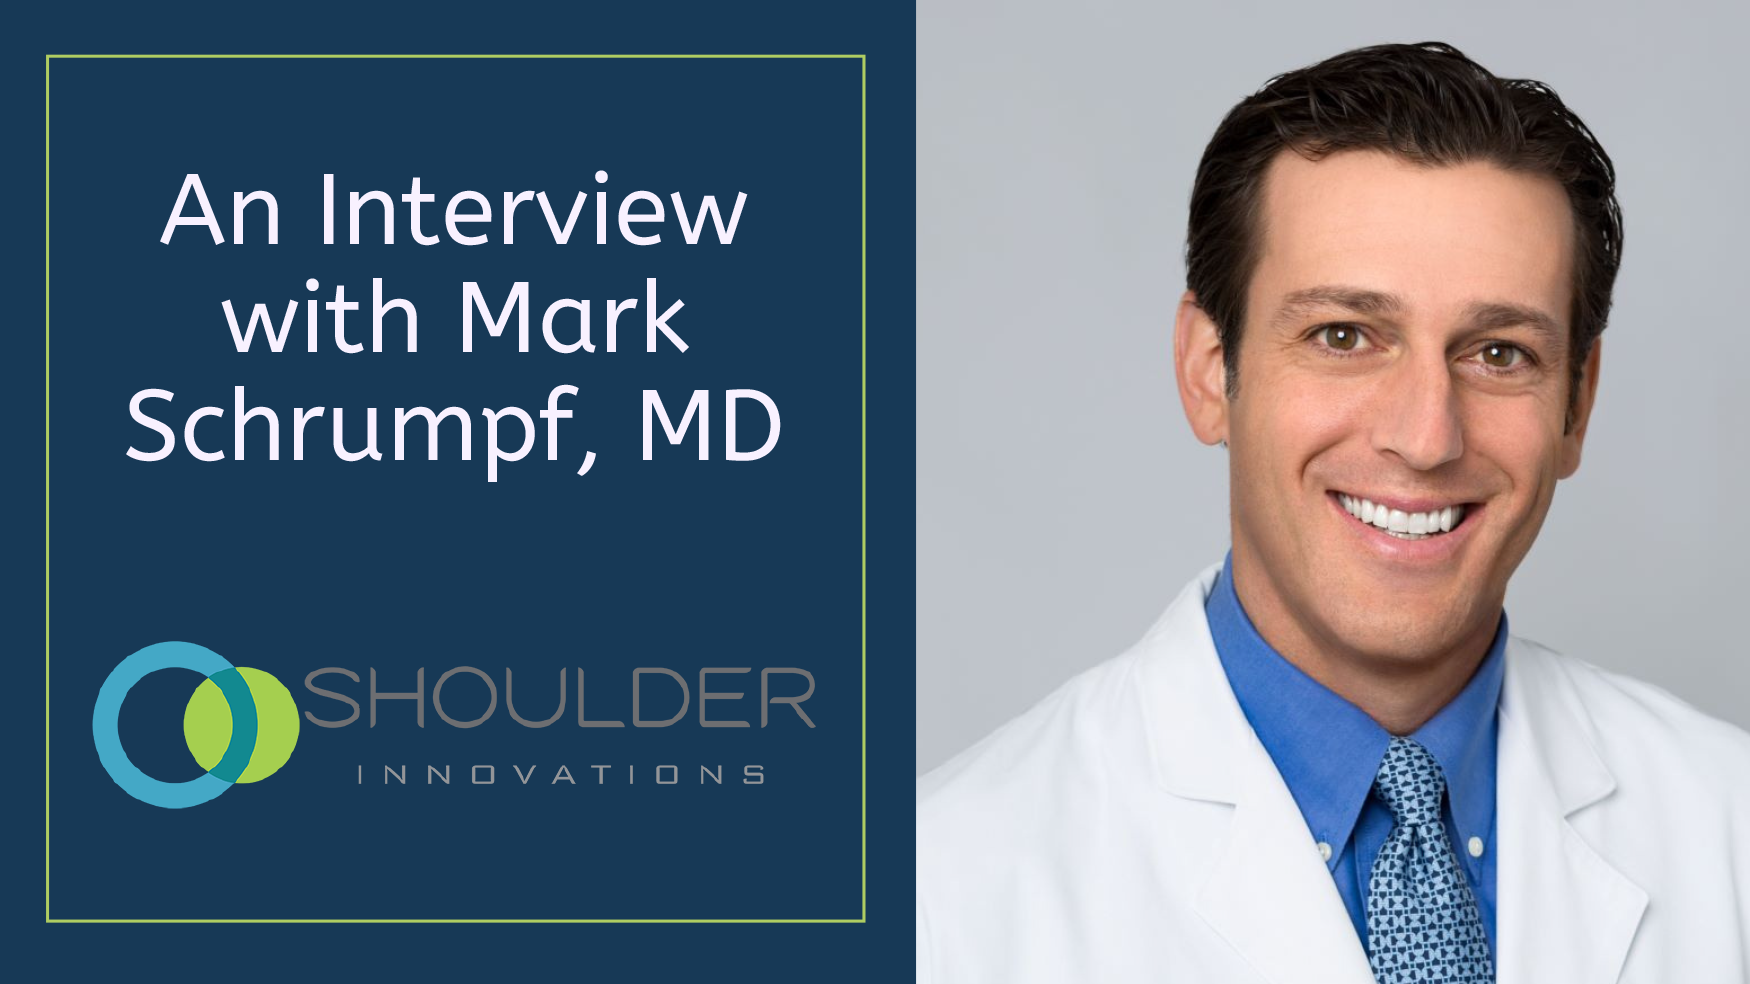 An Interview with Mark Schrumpf, MD